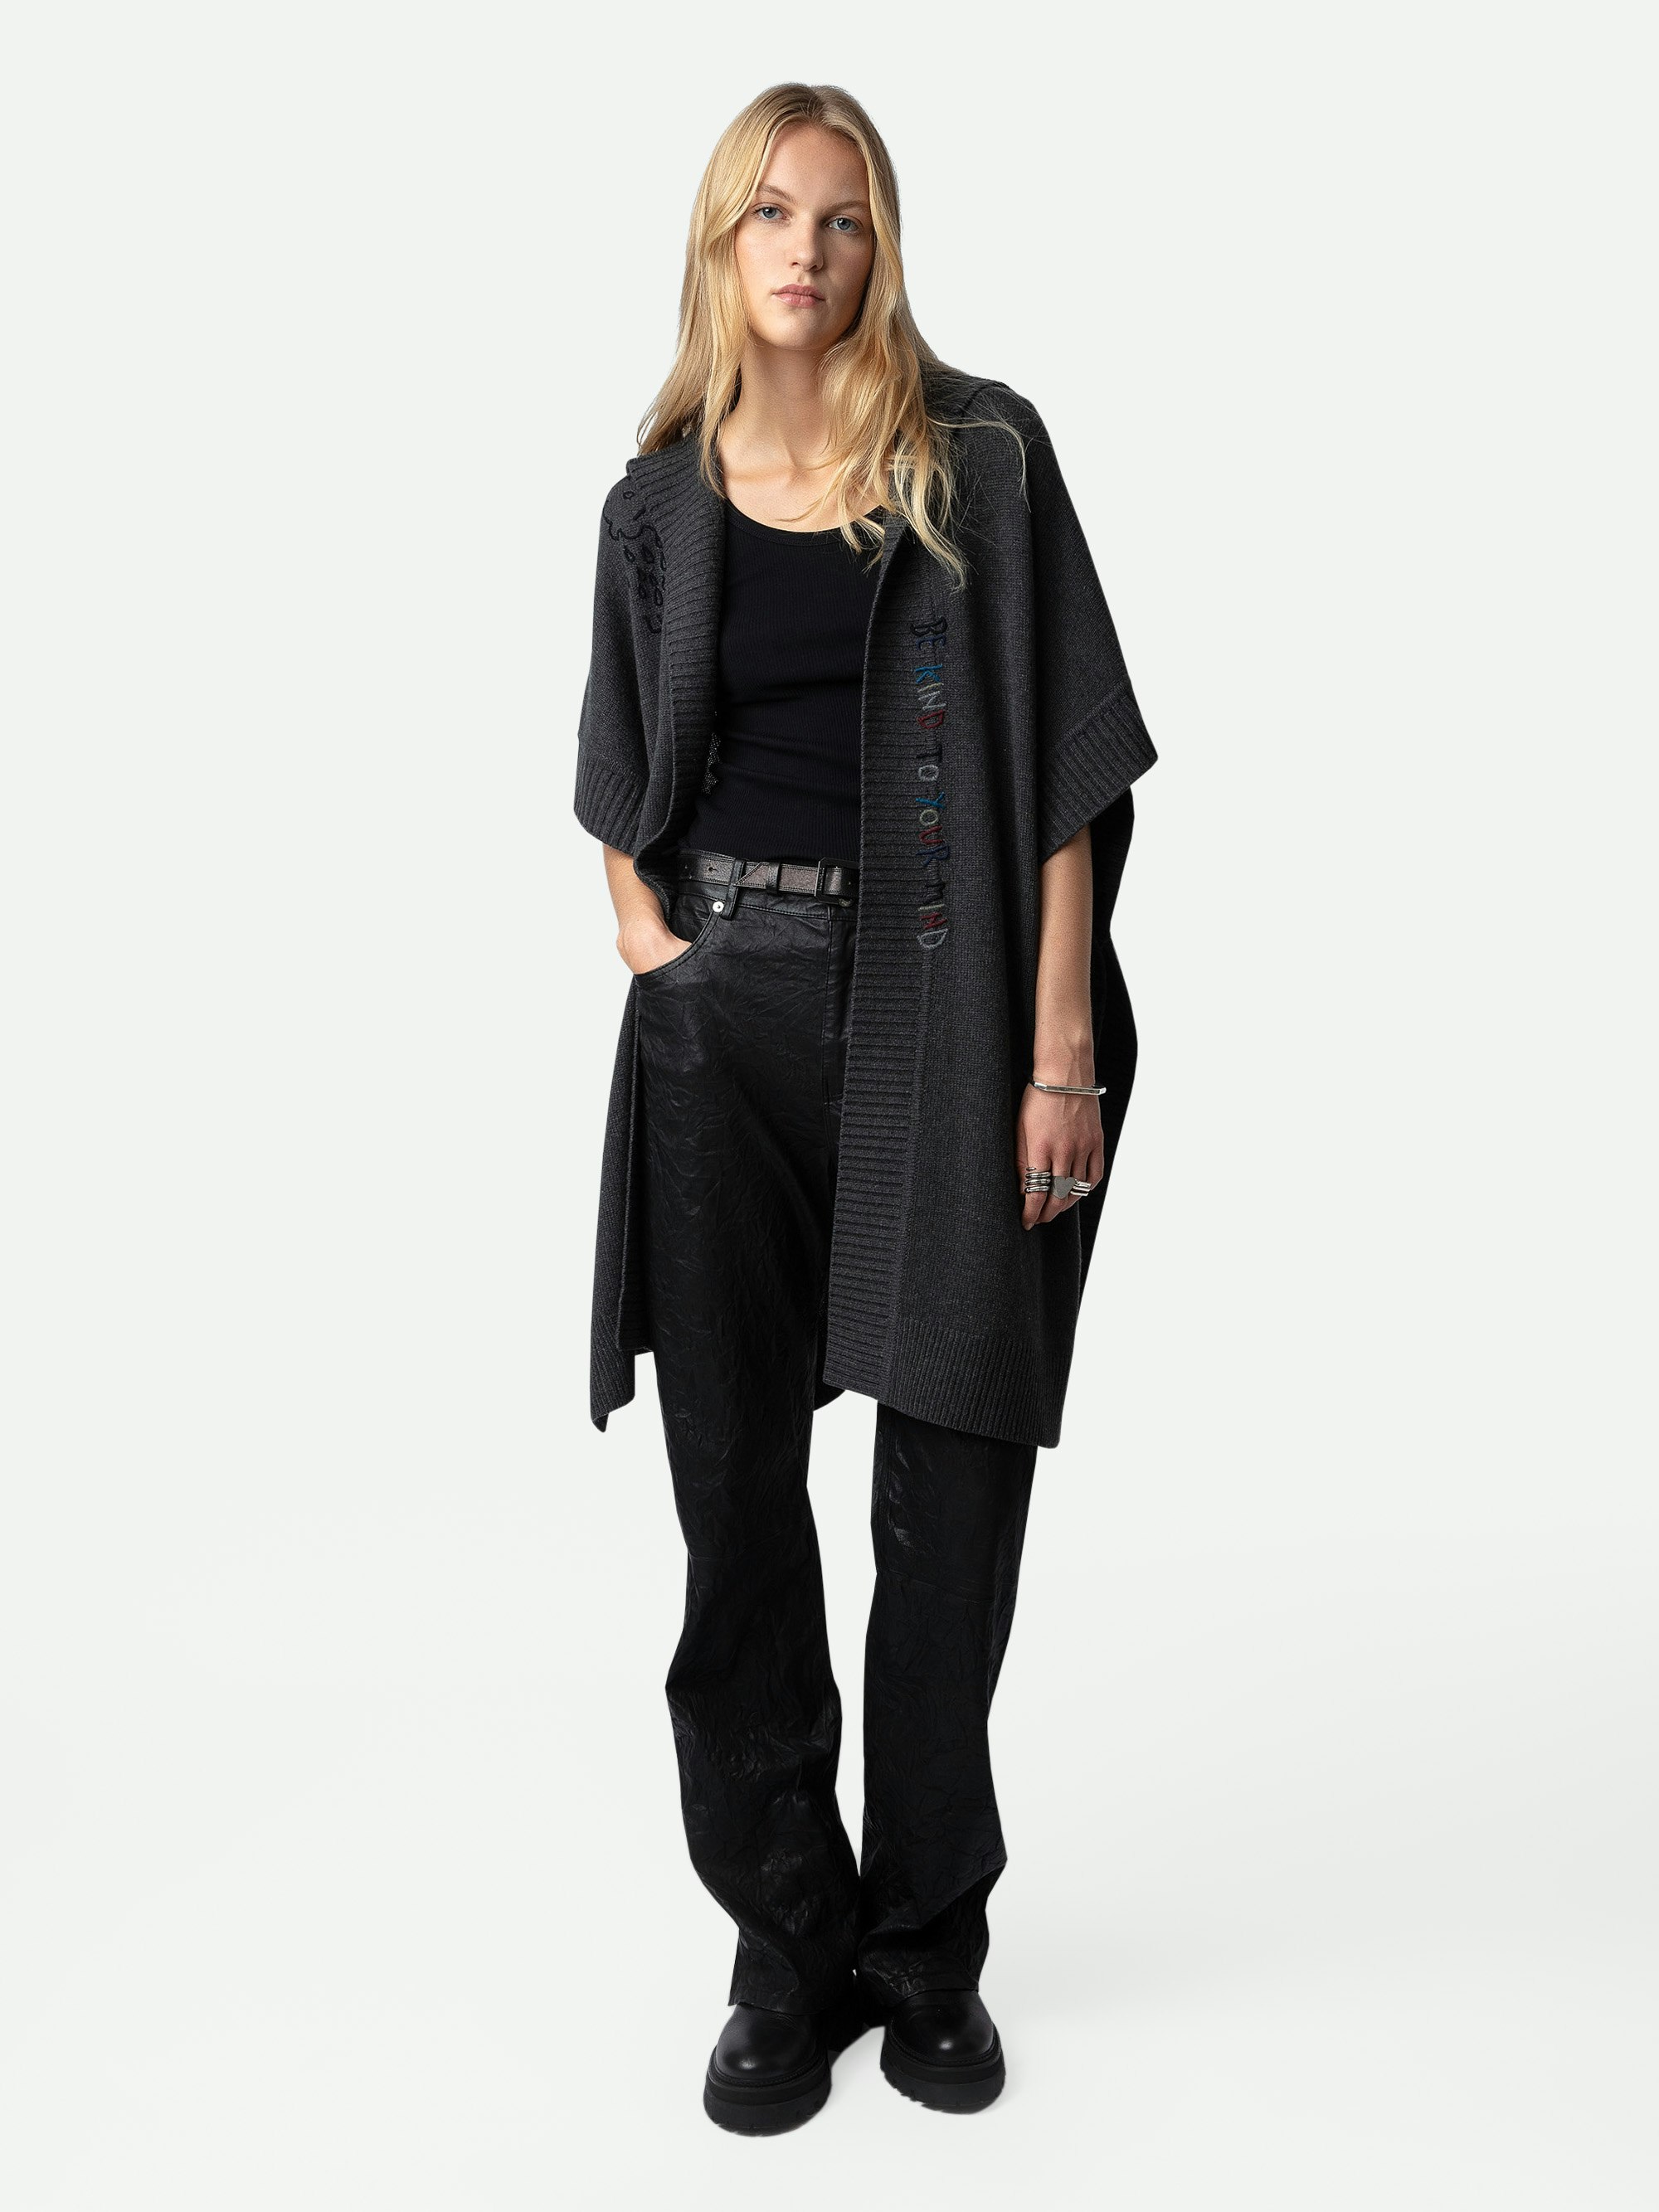 Cardigan Inna 100% Cachemire - Cardigan-cappotto lungo in 100% cachemire grigio con cappuccio, maniche corte e personalizzazioni create da Humberto Cruz.